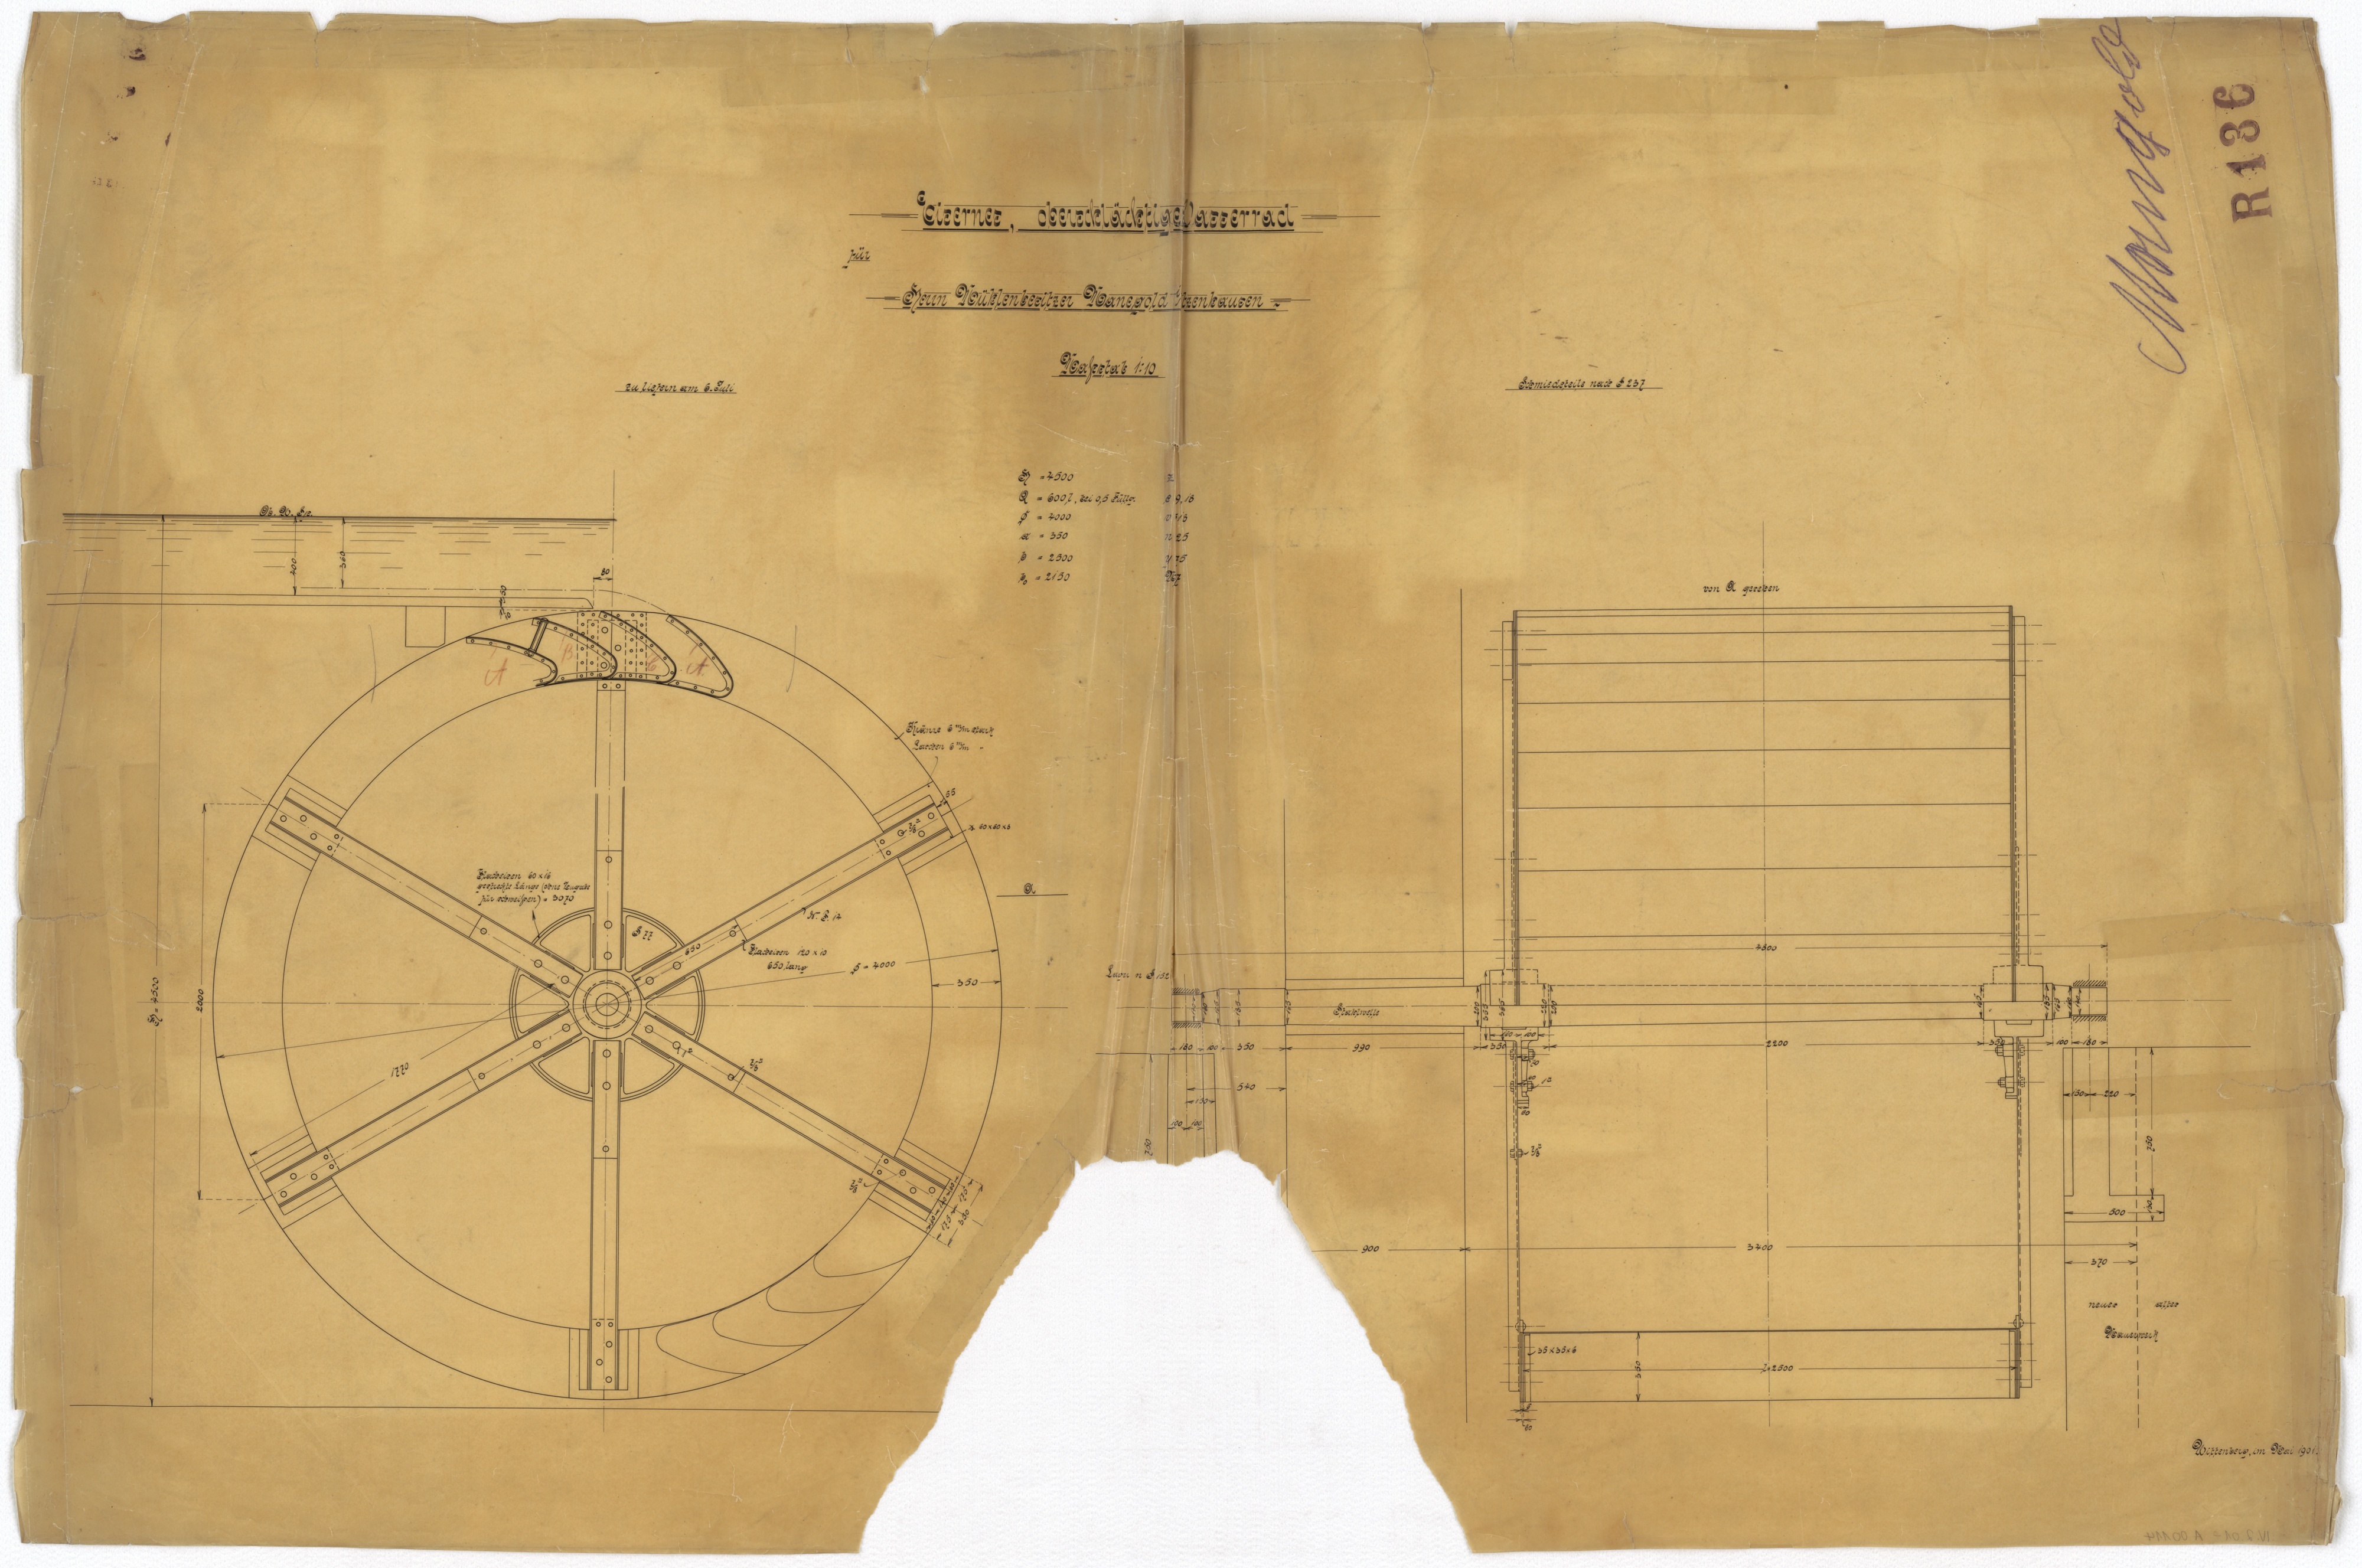 Technische Zeichnung : Eisernes, oberschlächtiges Wasserrad für Herrn Mühlenbesitzer Manegald in Witzenhausen (Stiftung Deutsches Technikmuseum Berlin CC BY-SA)